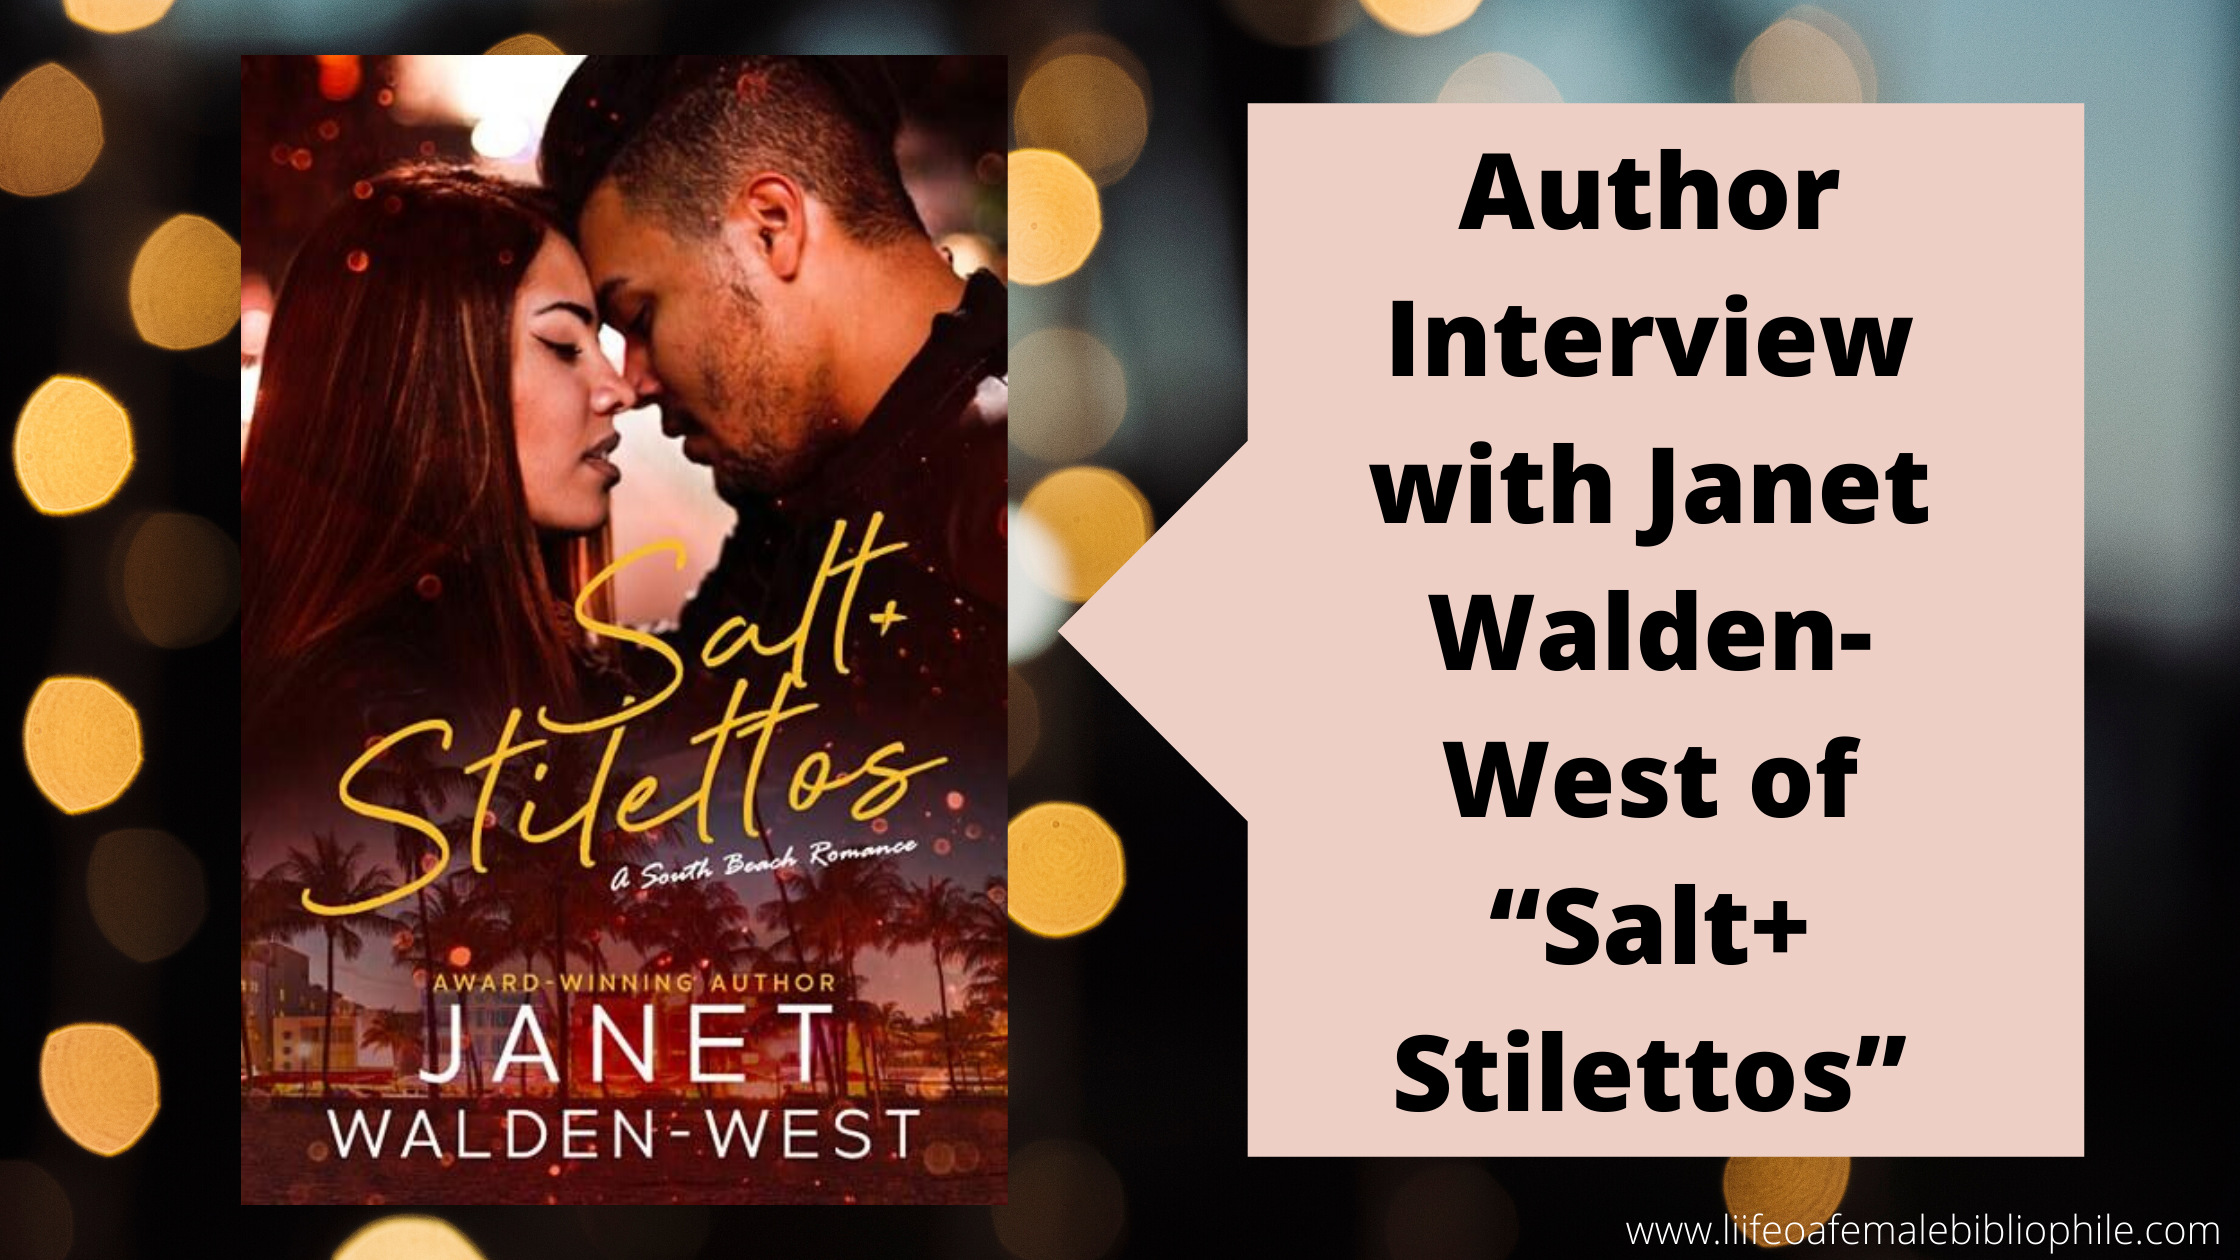 Author Interview with Janet Walden-West of “Salt+Stilettos”